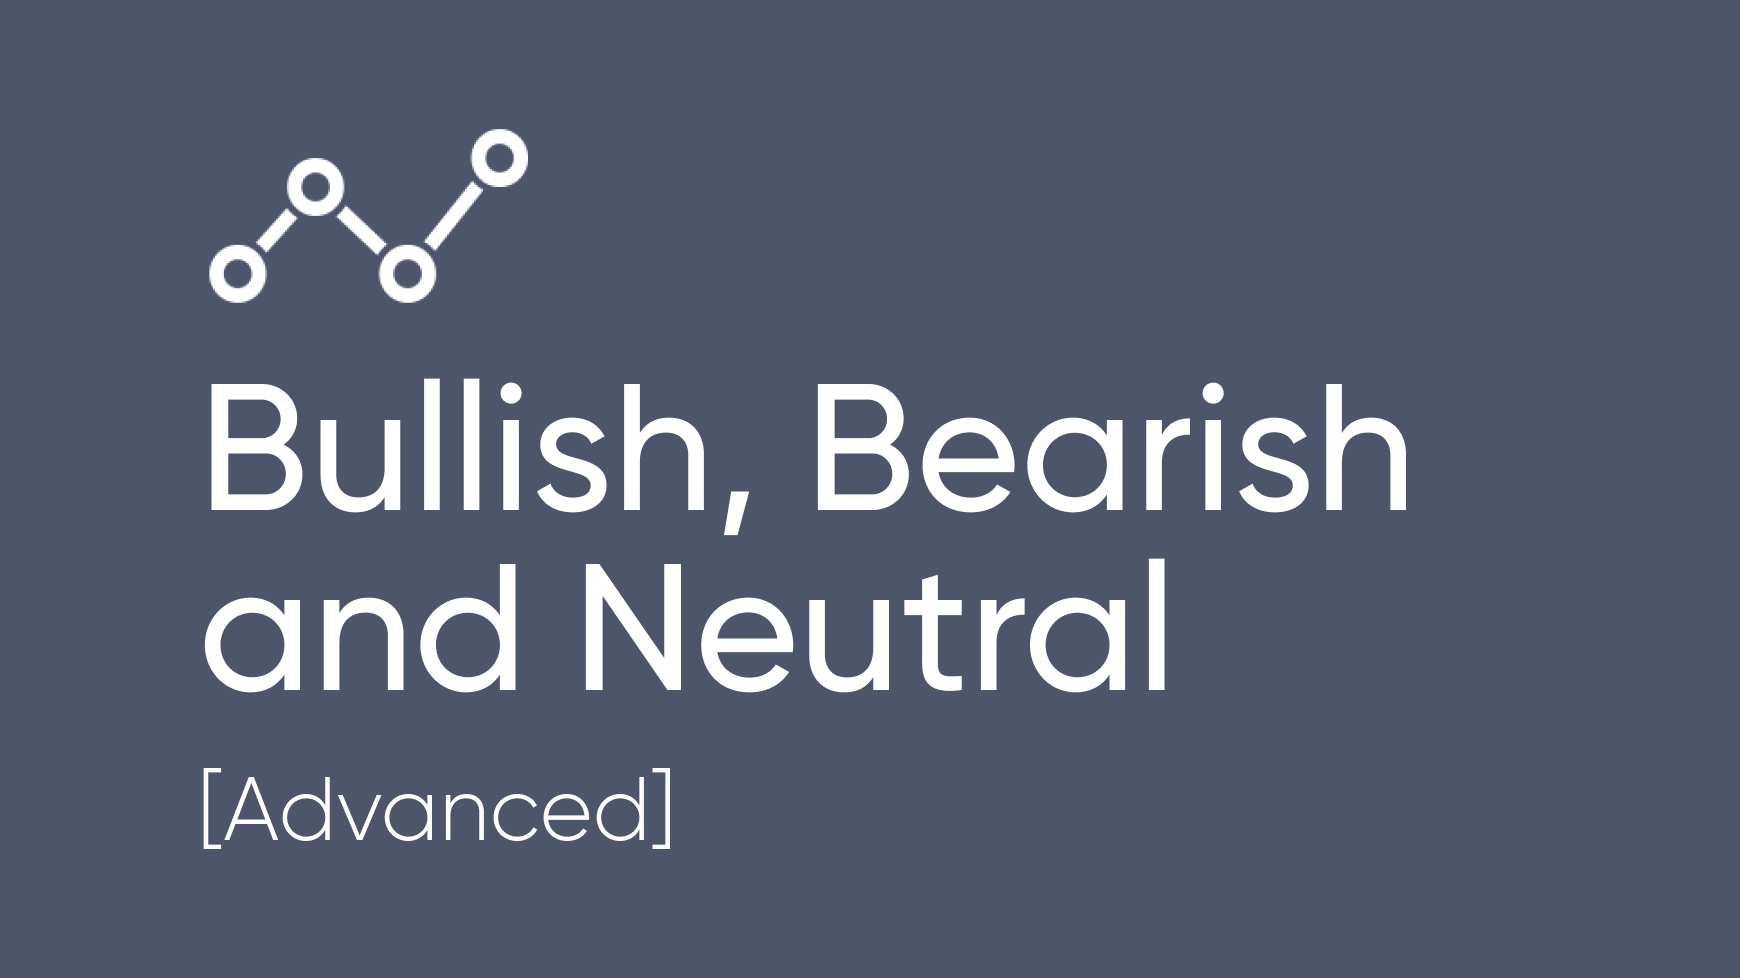 Bullish, Bearish and Neutral